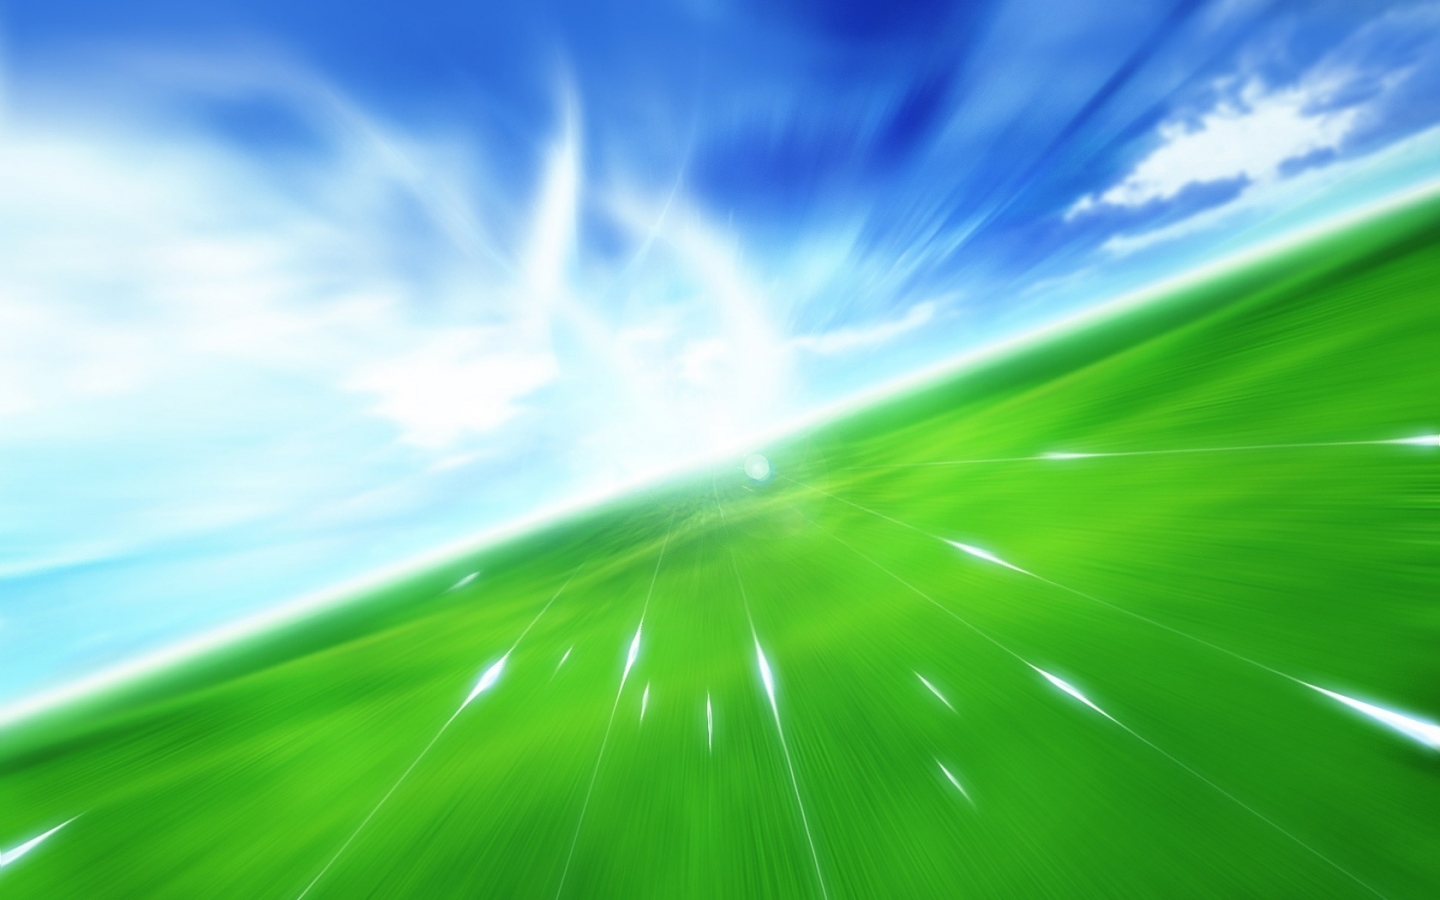 Green Fields for 1440 x 900 widescreen resolution